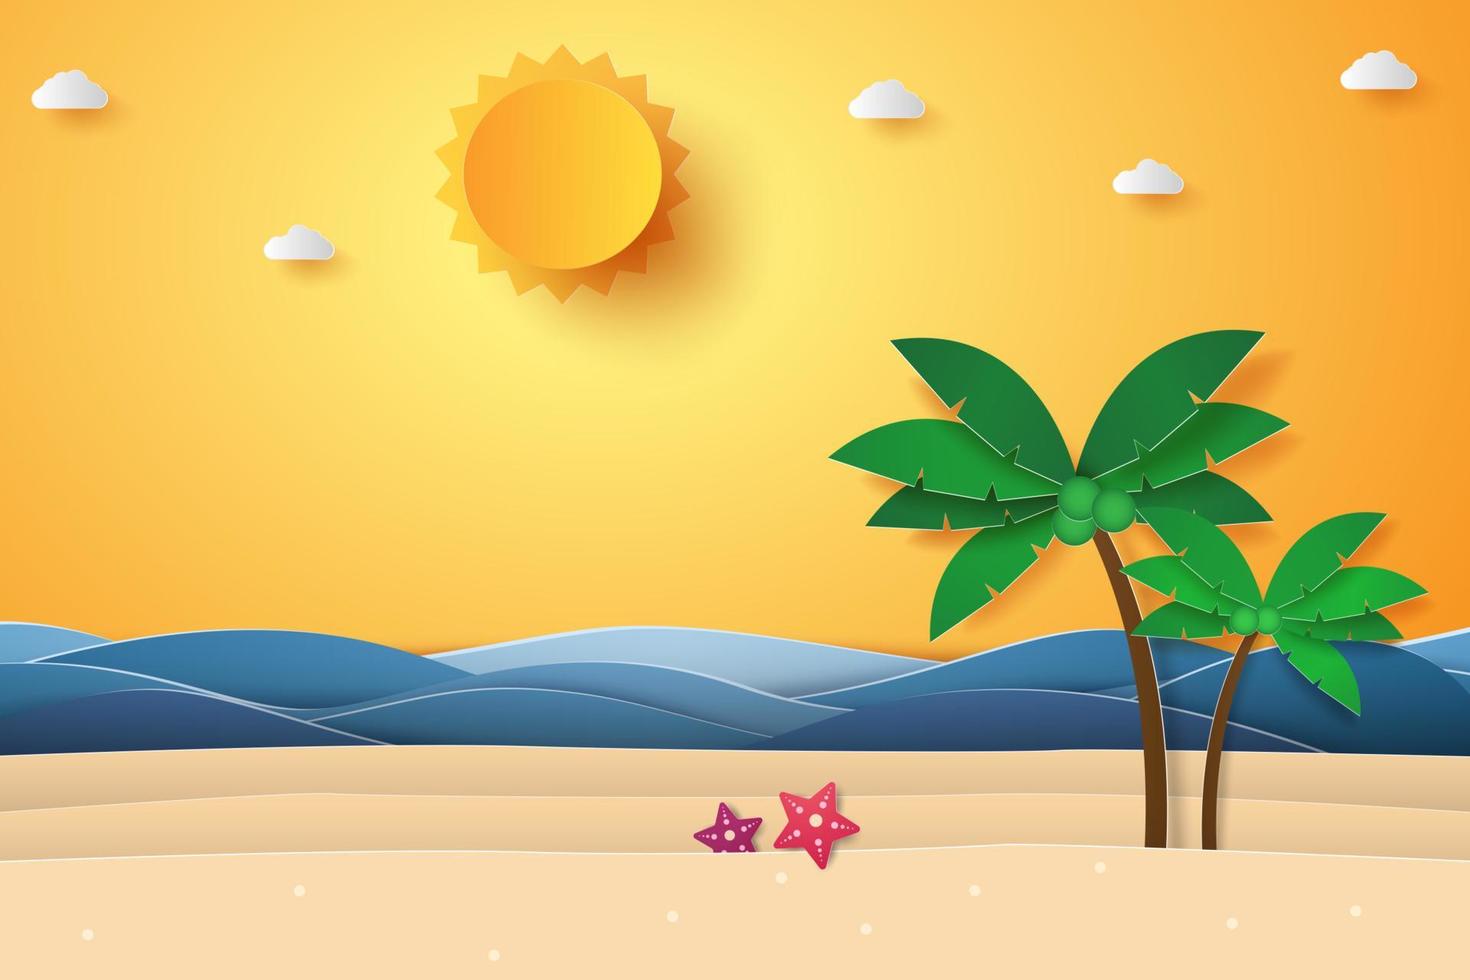 paisaje marino con cocotero en la playa y la isla, estilo de arte en papel vector